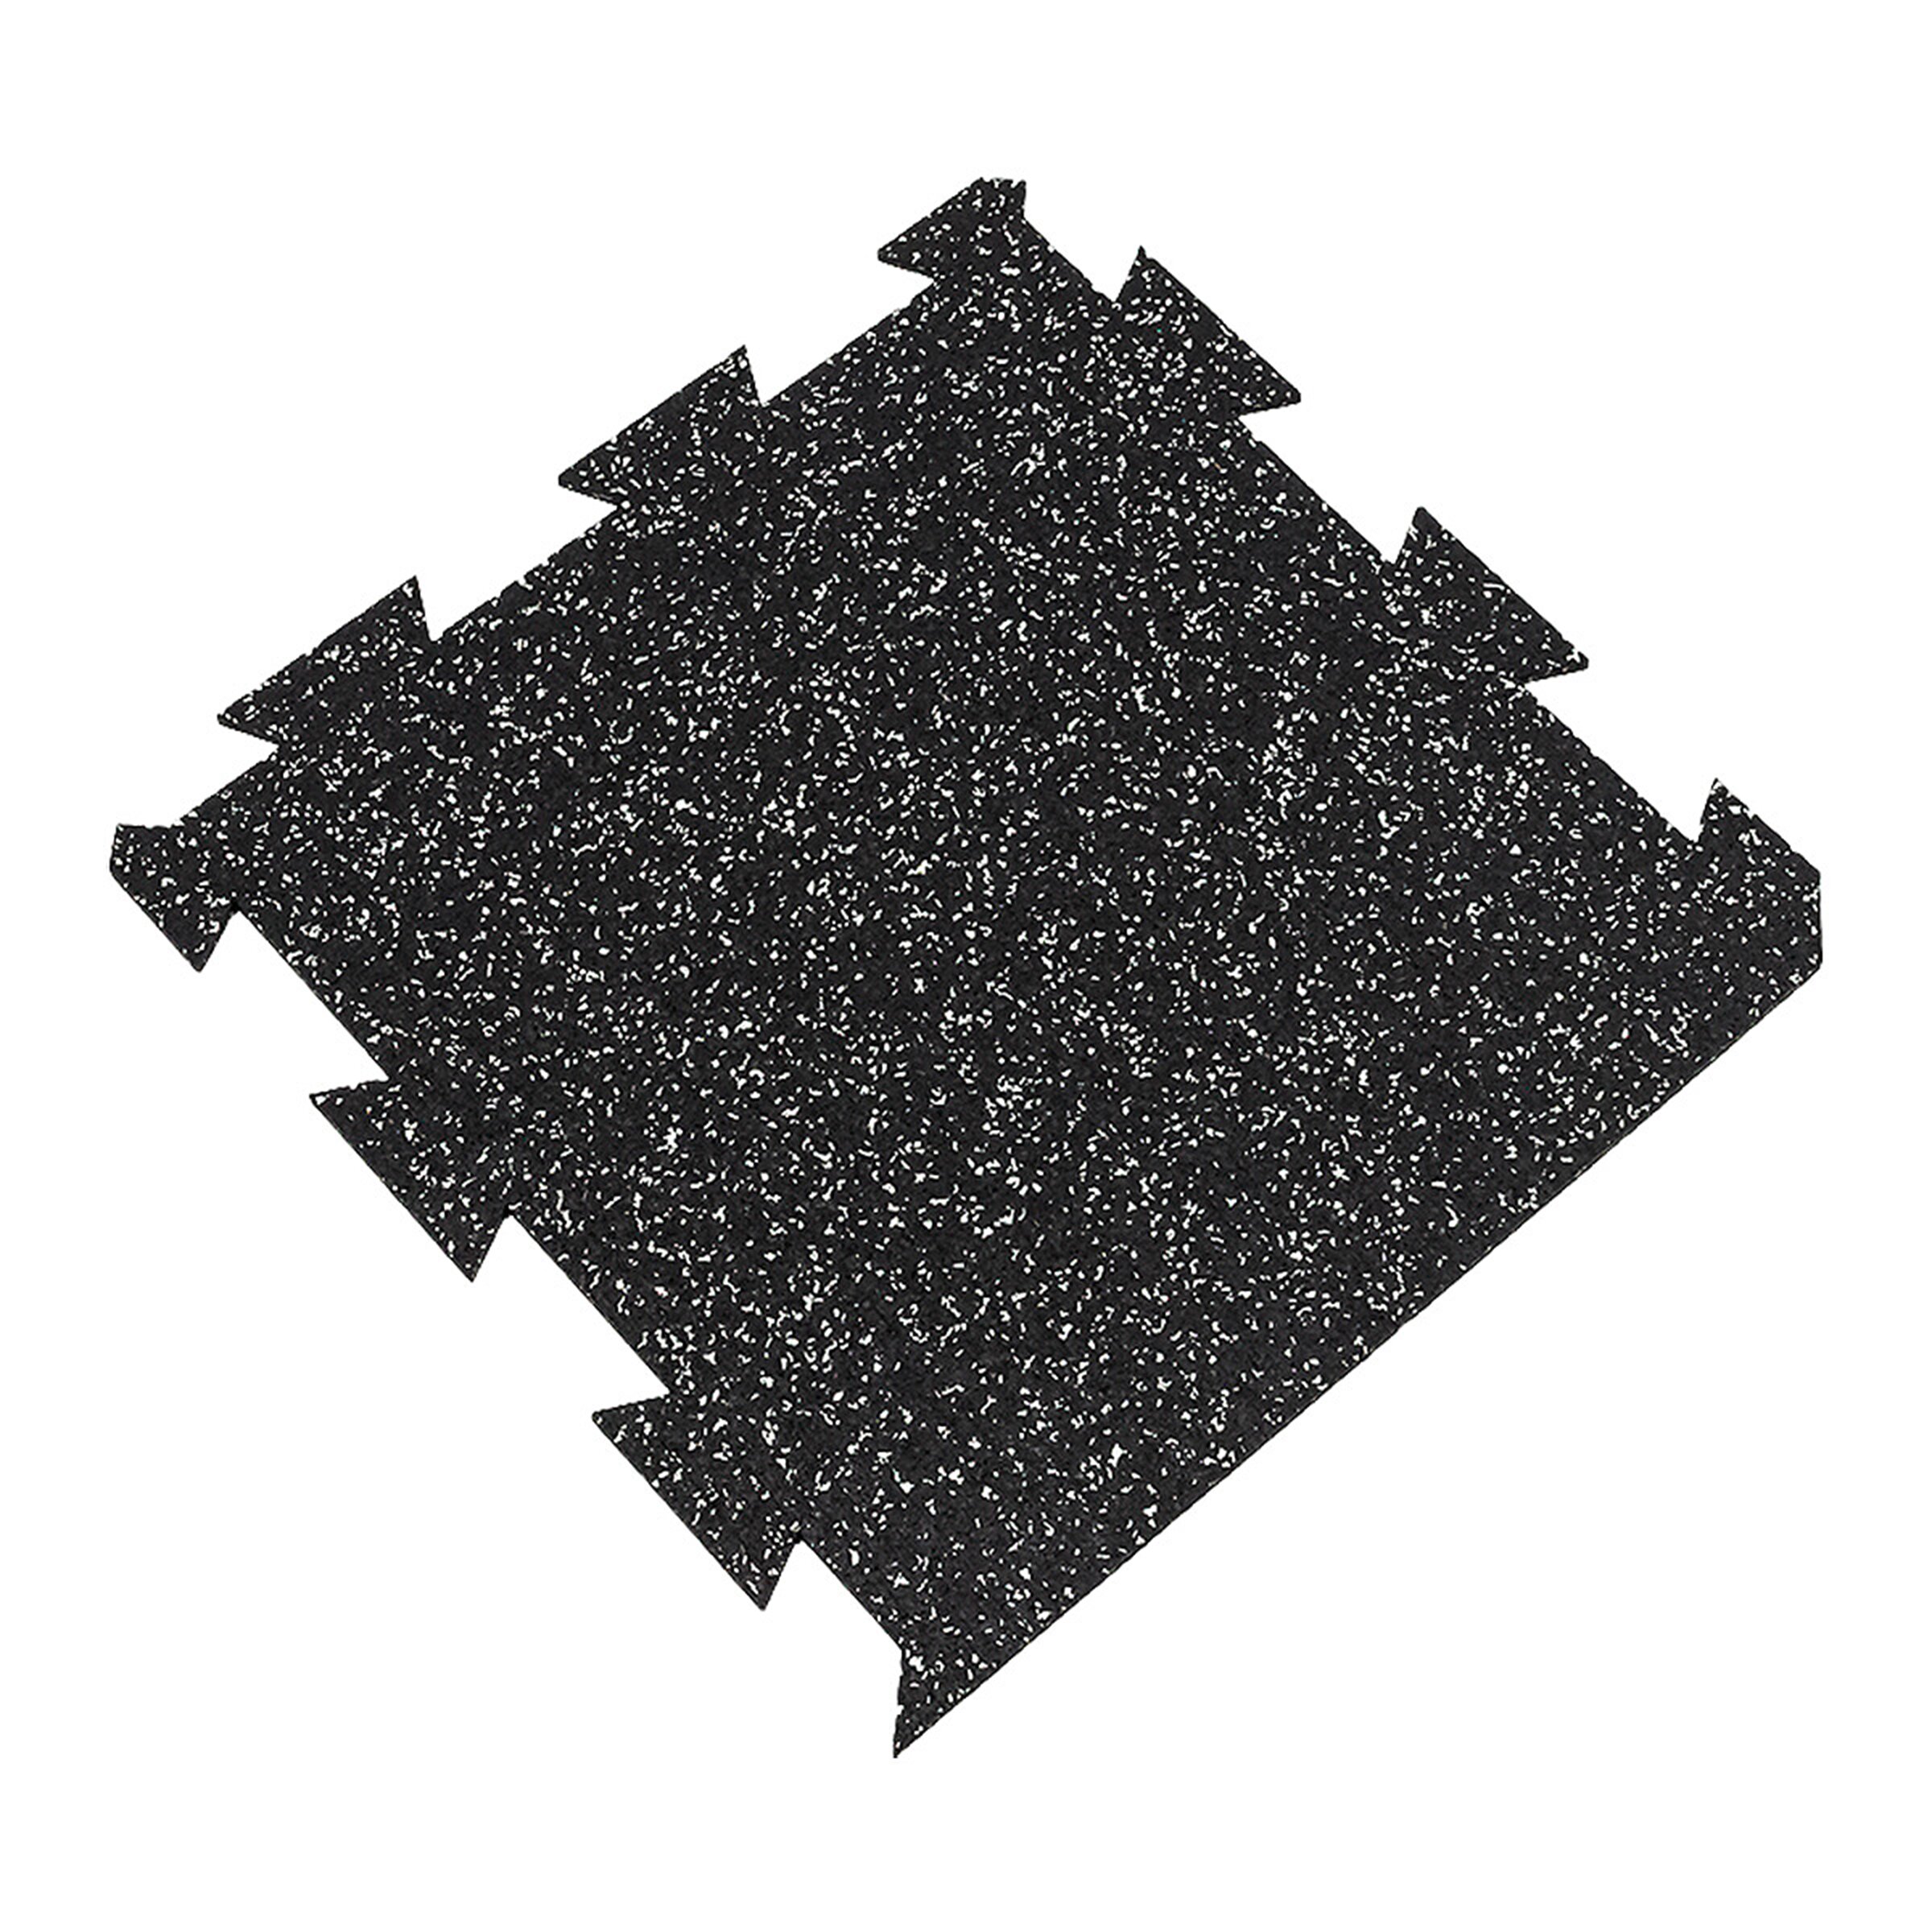 Černo-bílá gumová modulová puzzle dlažba FLOMA FitFlo SF1050 - délka 50 cm, šířka 50 cm, výška 1,6 cm